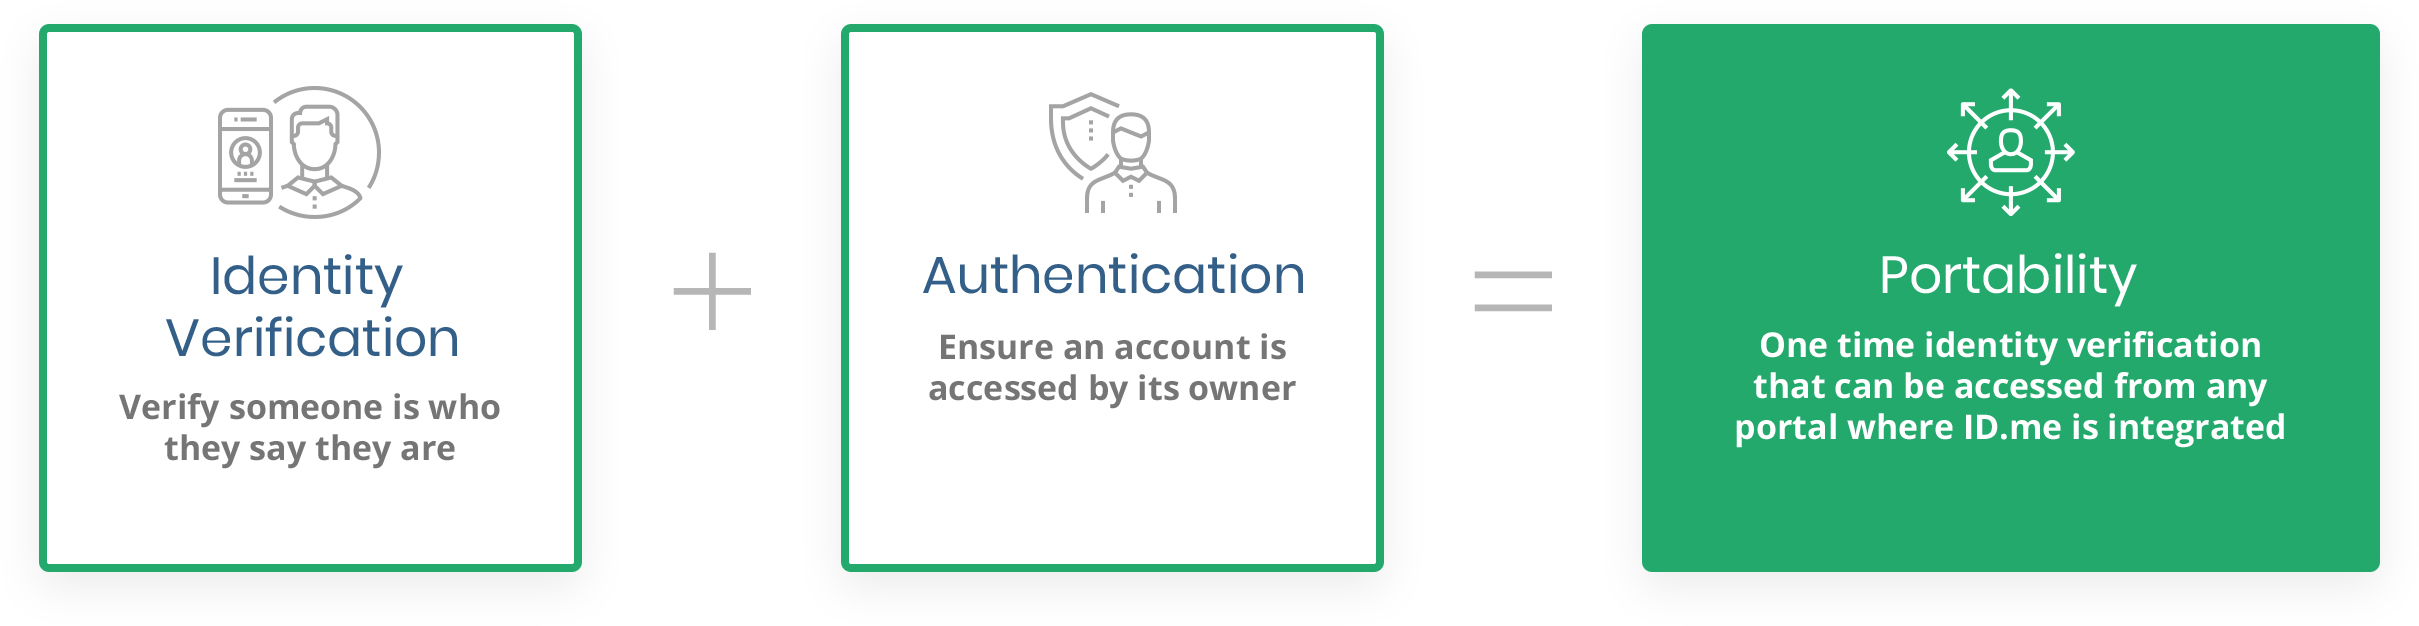 Easy Identity Verification Steps